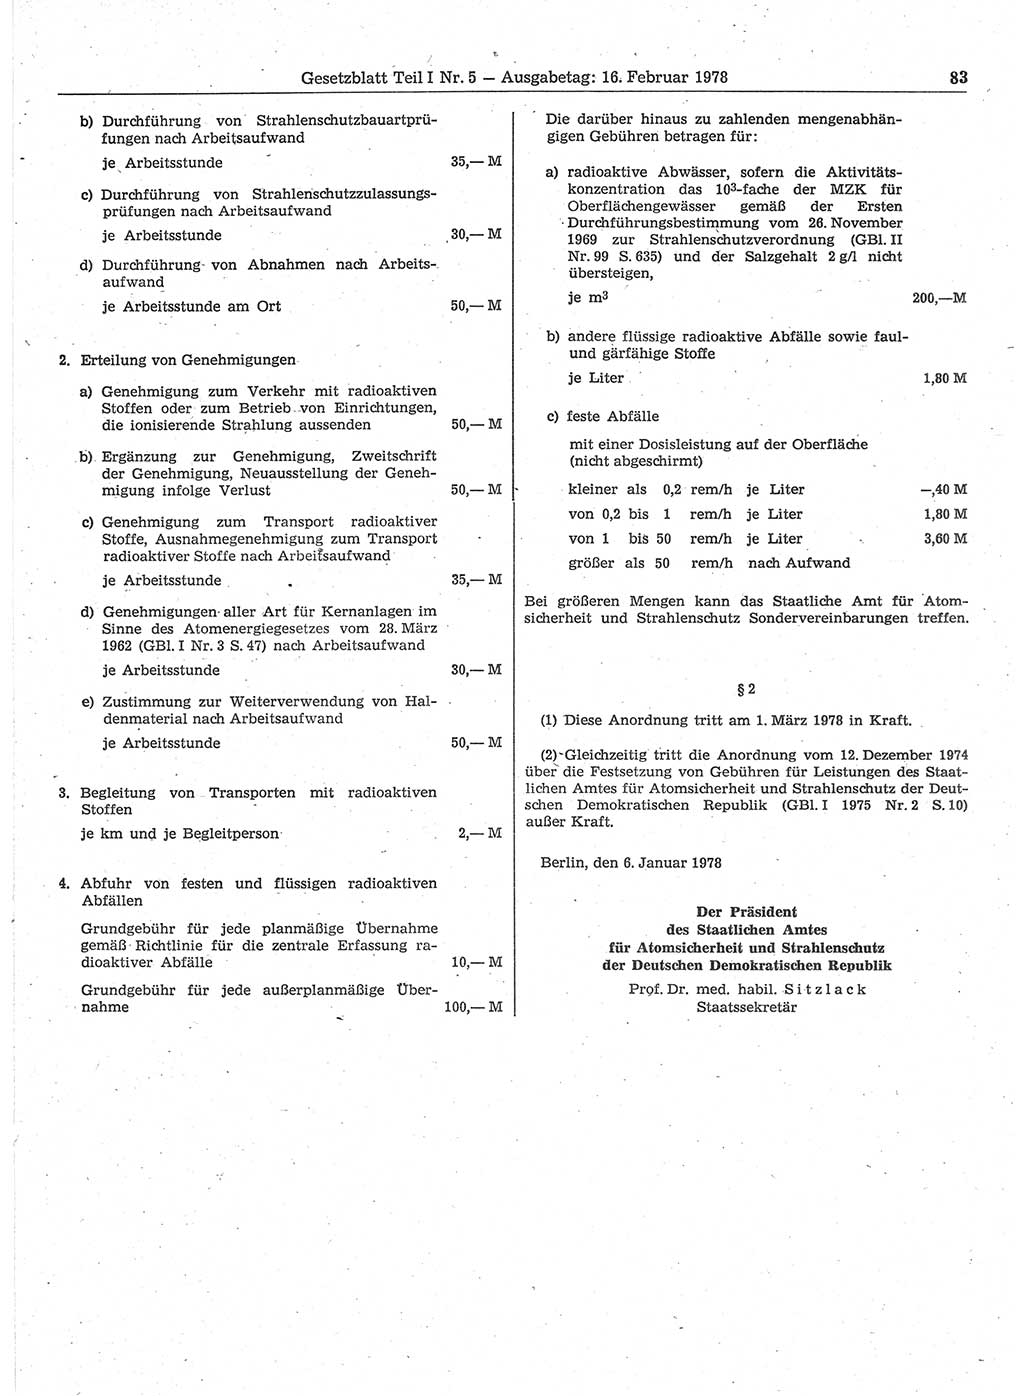 Gesetzblatt (GBl.) der Deutschen Demokratischen Republik (DDR) Teil Ⅰ 1978, Seite 83 (GBl. DDR Ⅰ 1978, S. 83)